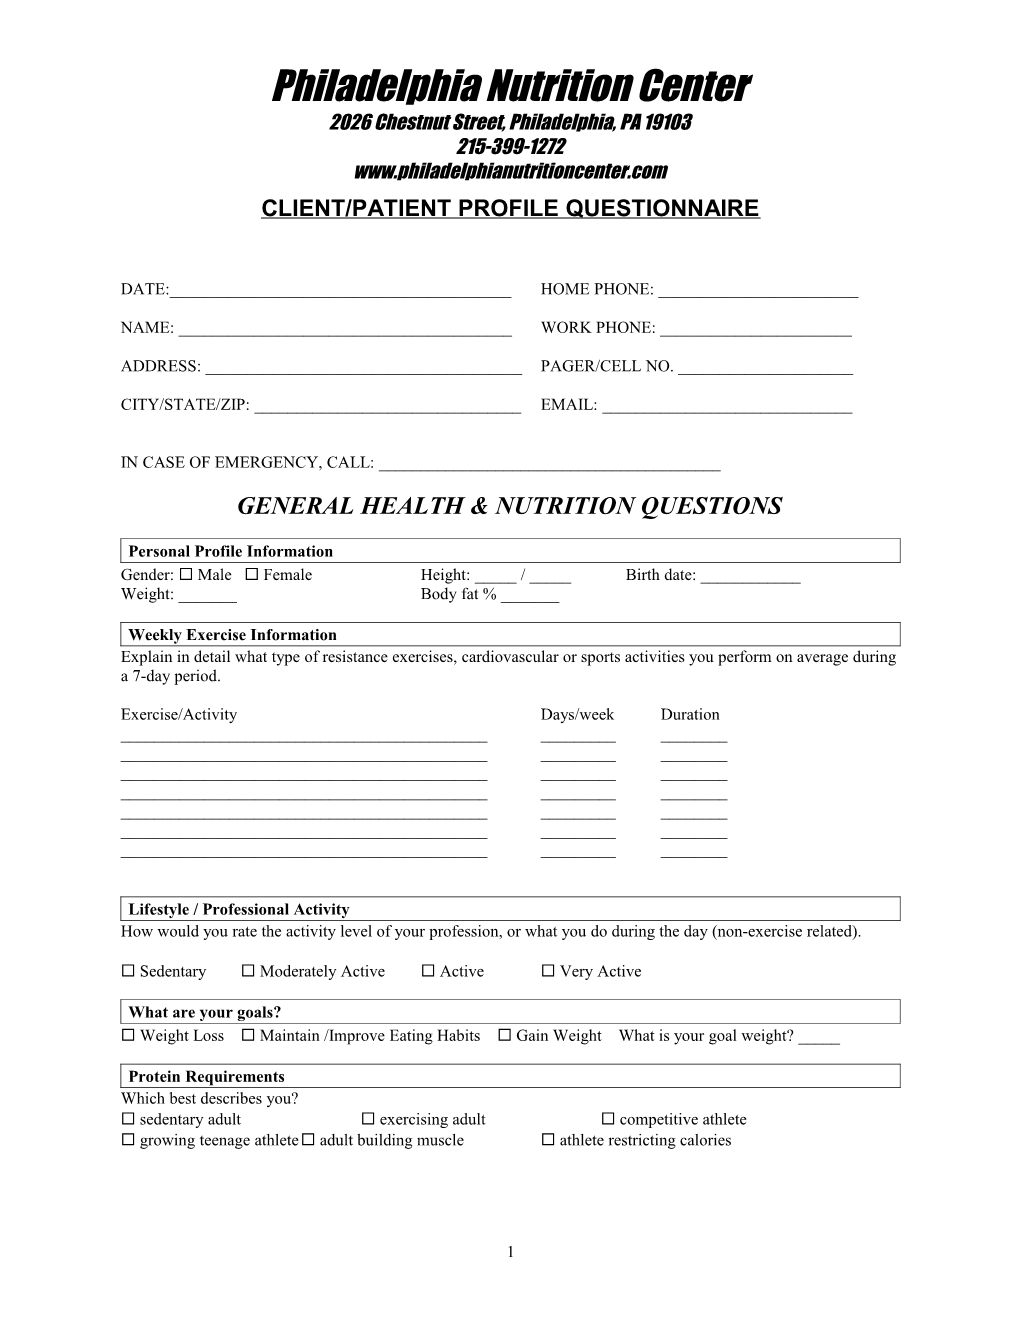 Client/Patient Profile Questionnaire